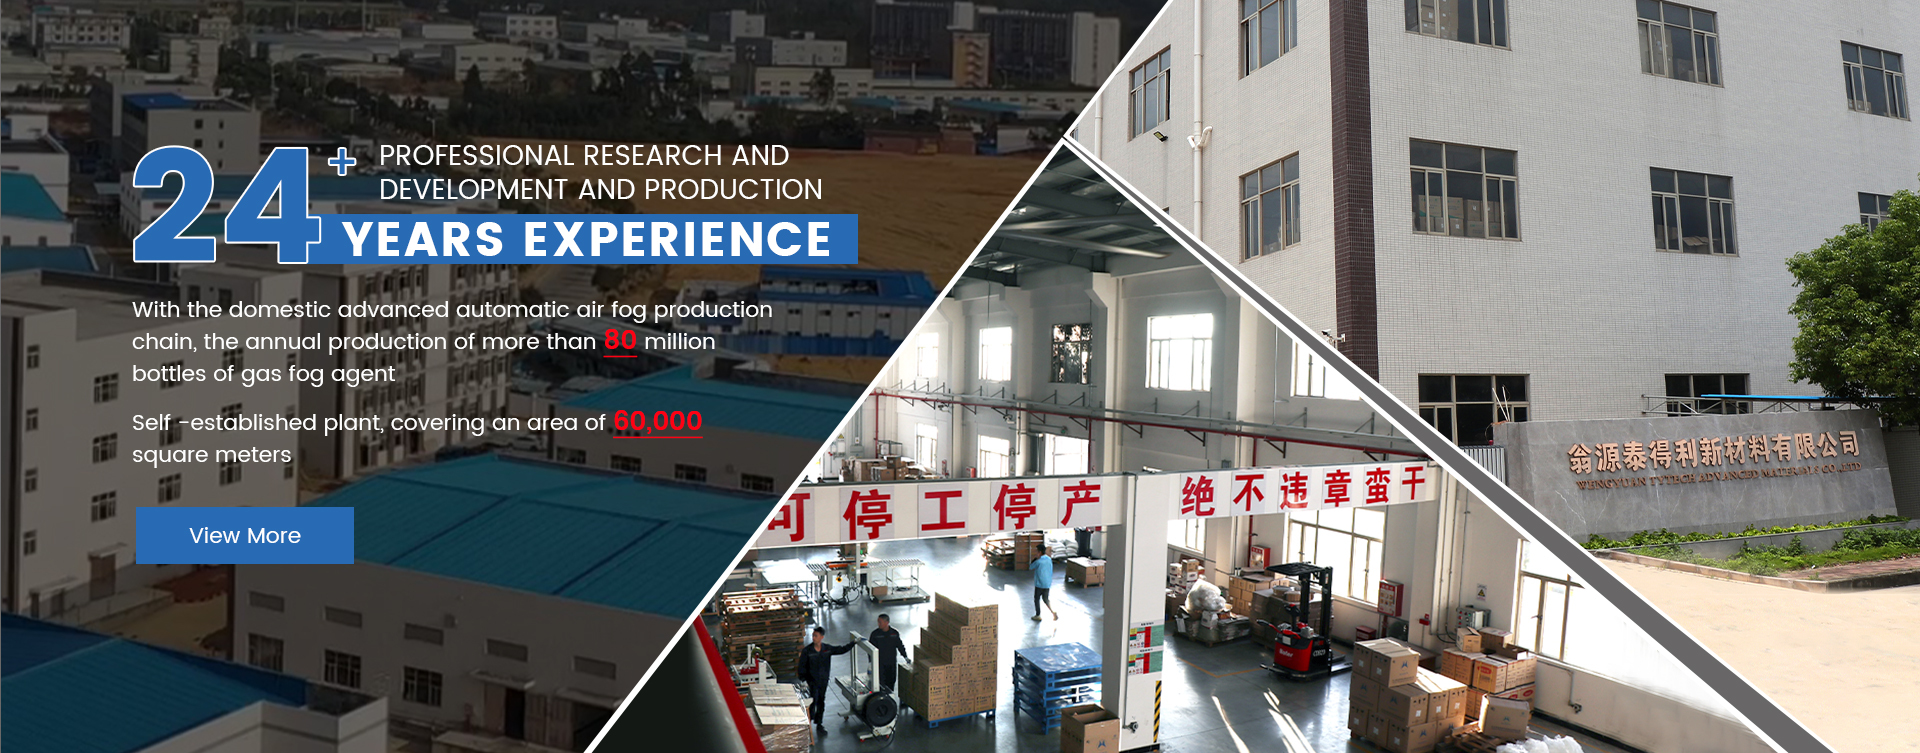 Wengyuan Tytech Advanced Materials Co., Ltd